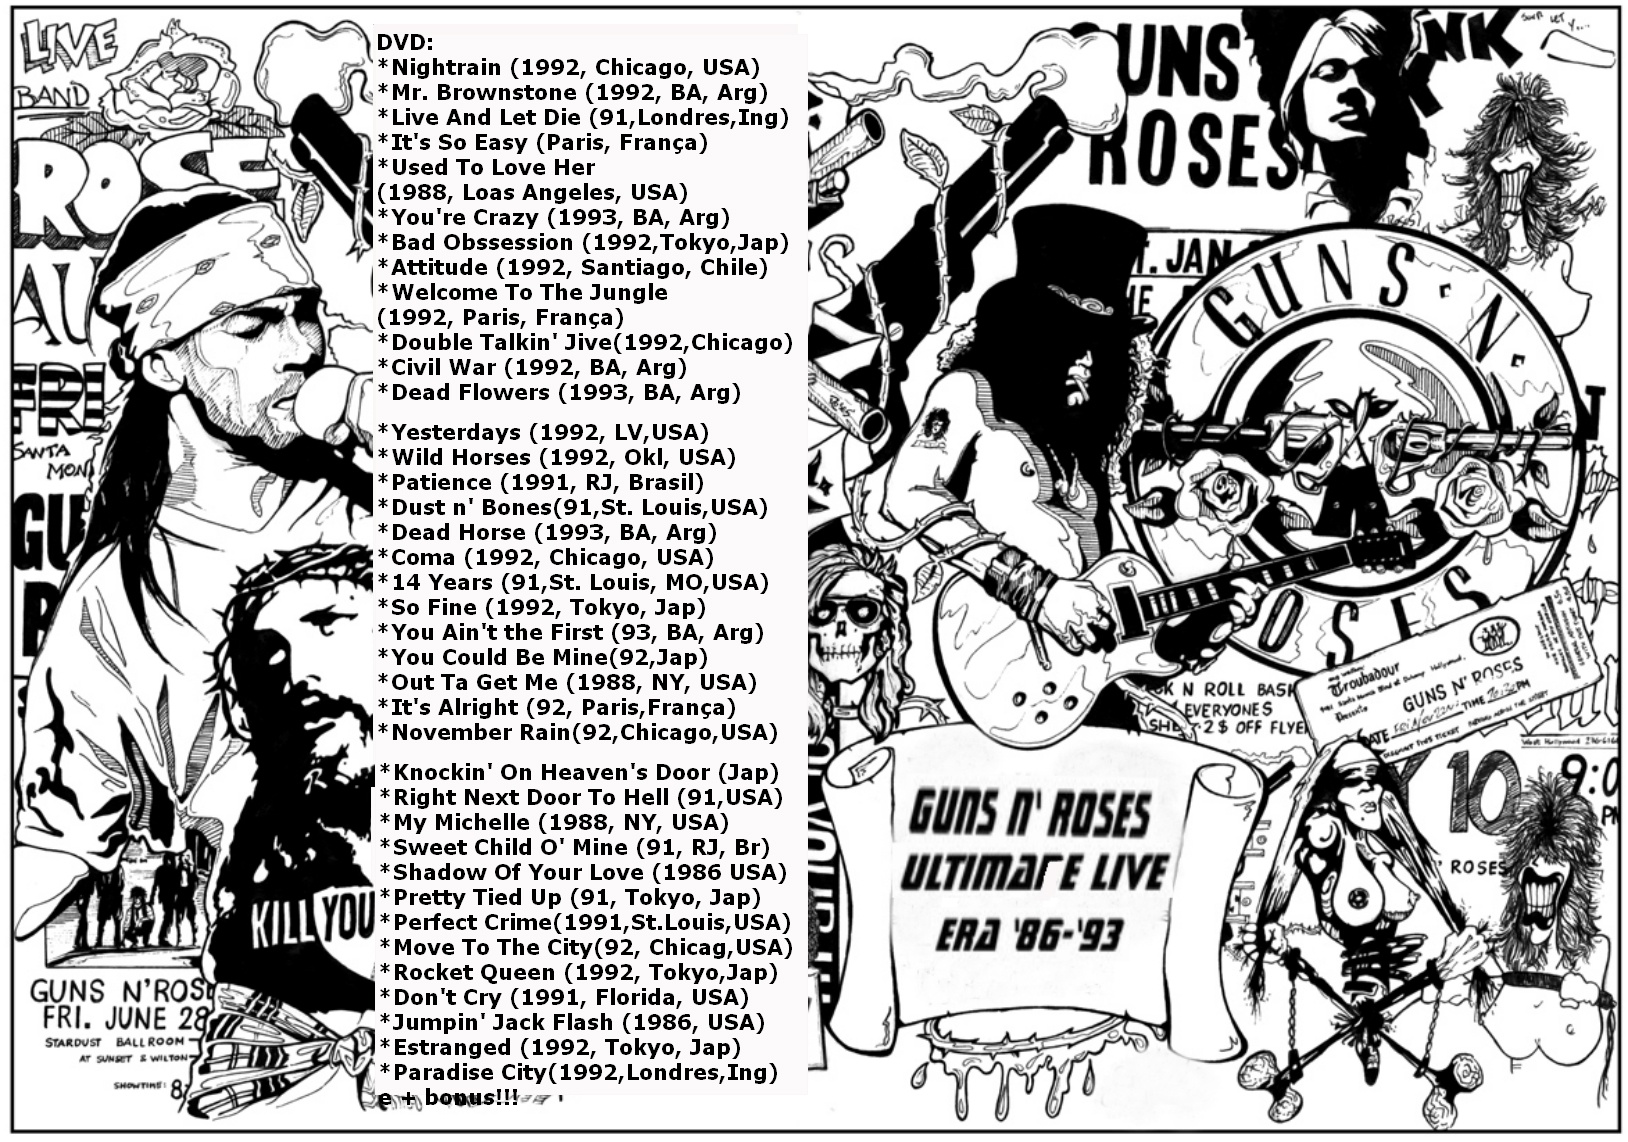 Guns N Roses: Ultimate Live Era '86 - ' 93 box cover